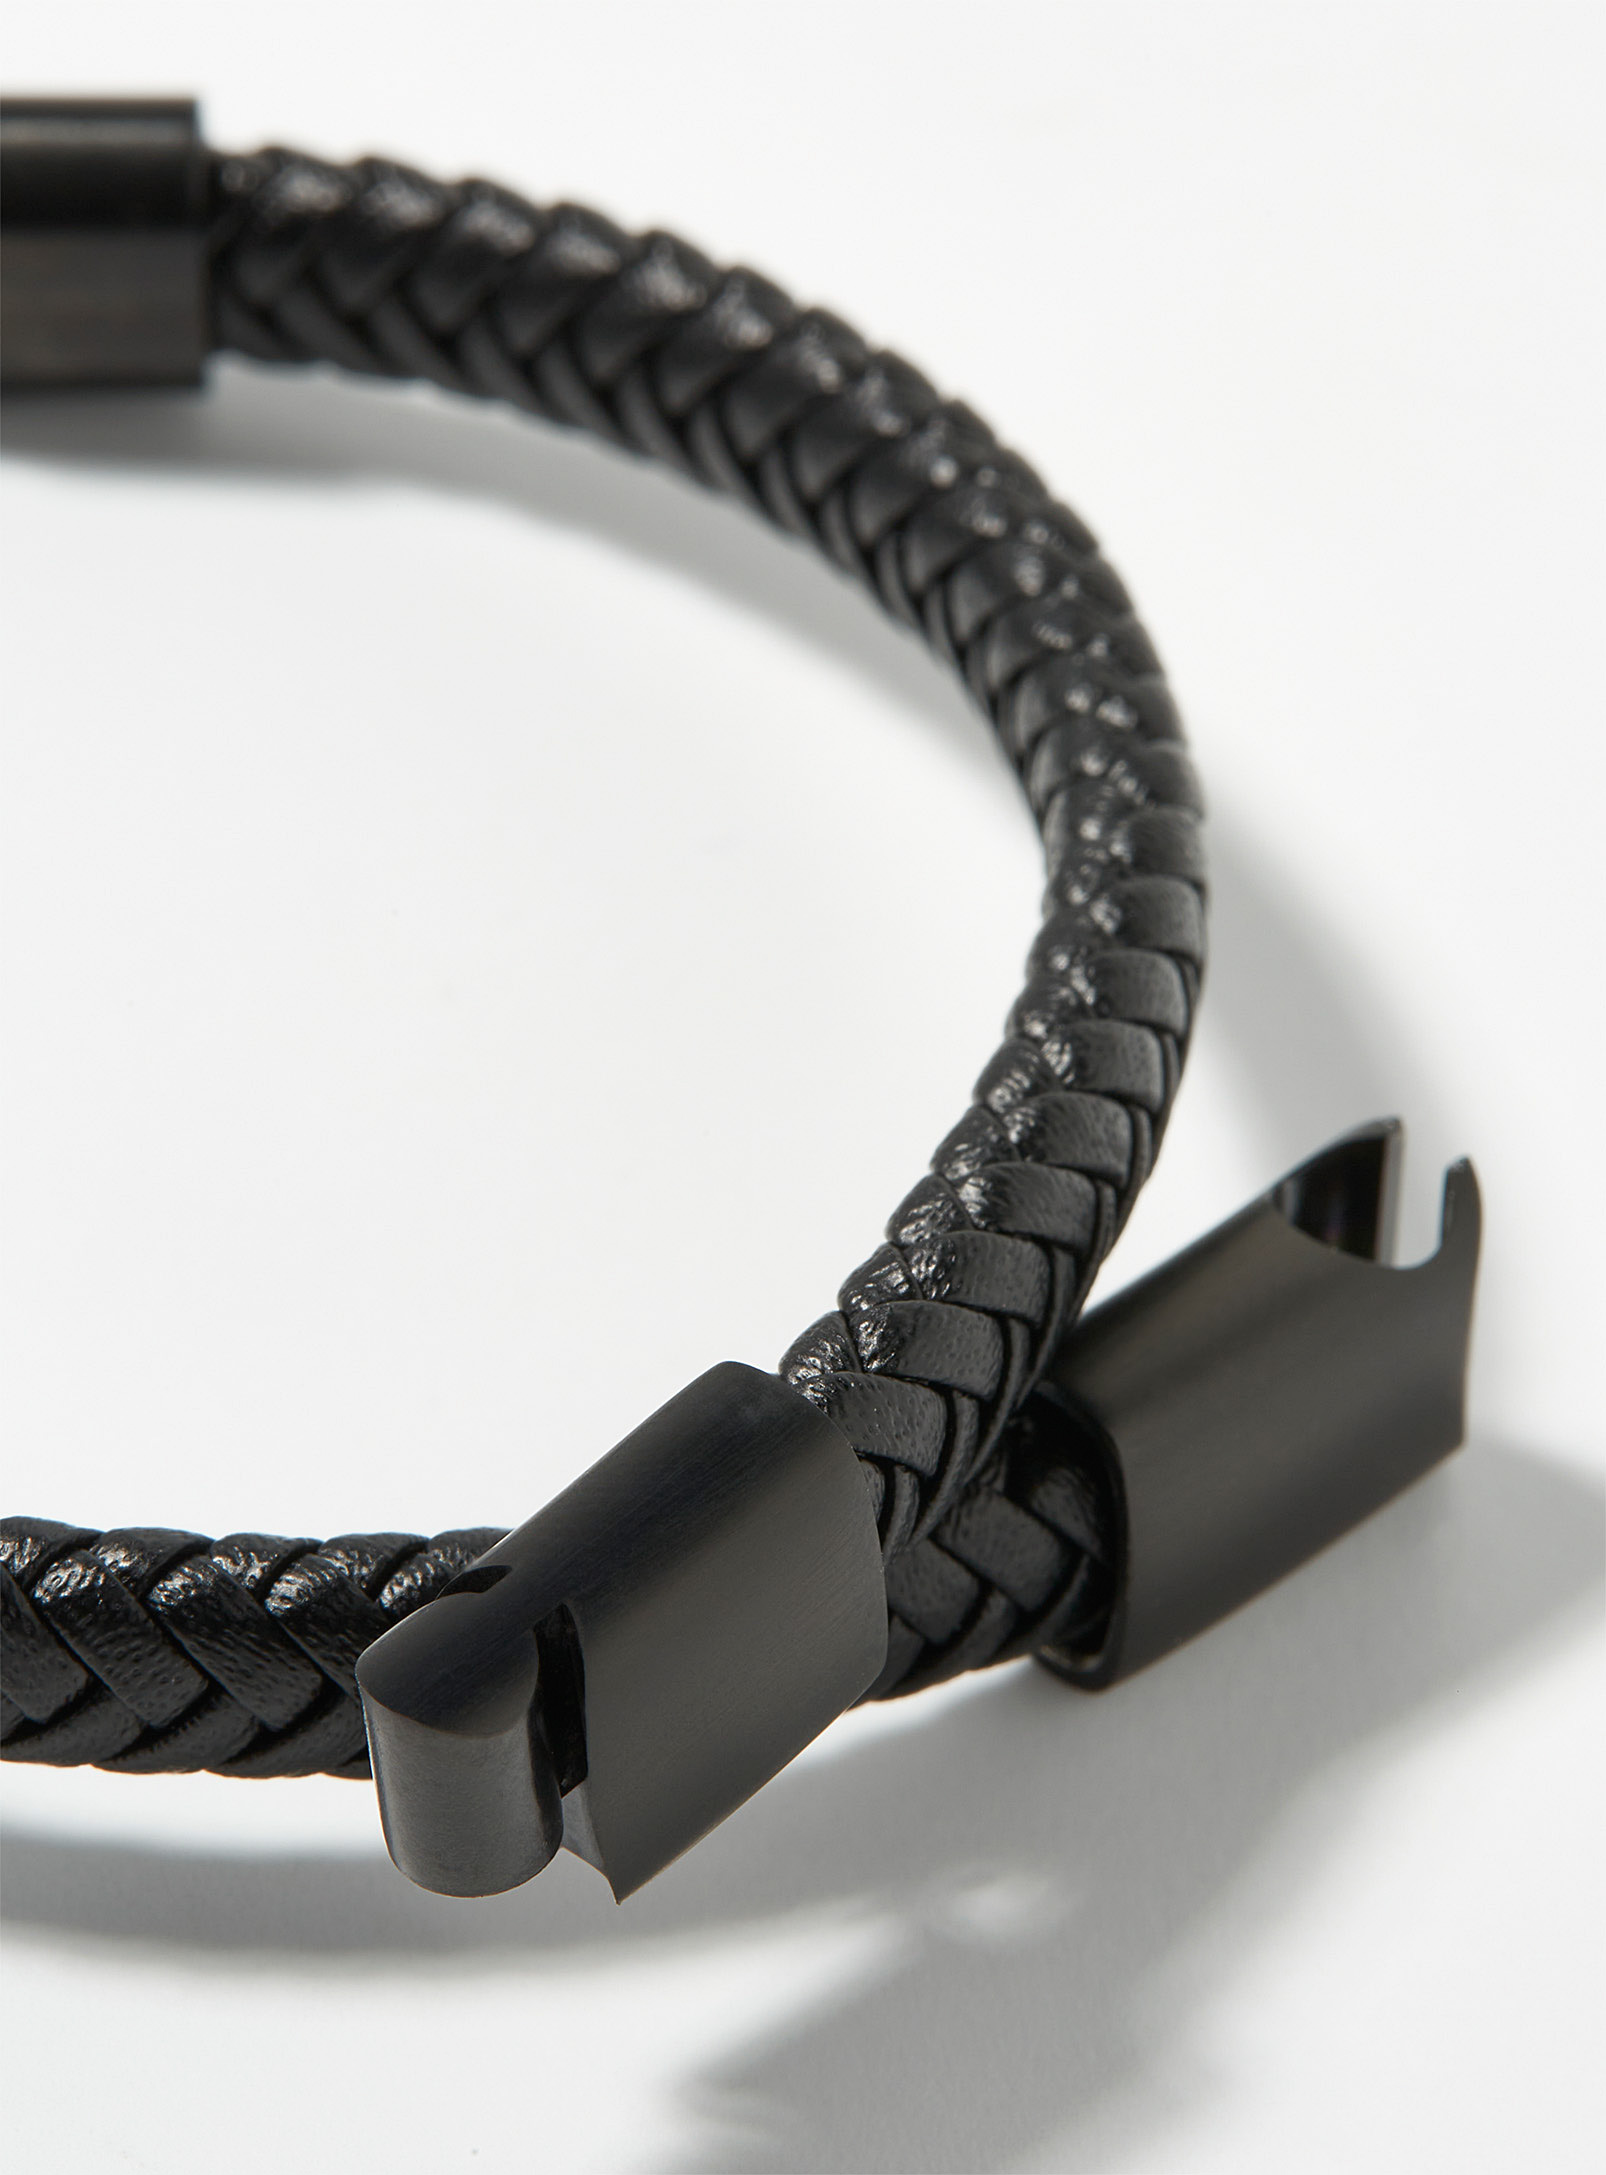 Le 31 - Le bracelet cuir tressé noir